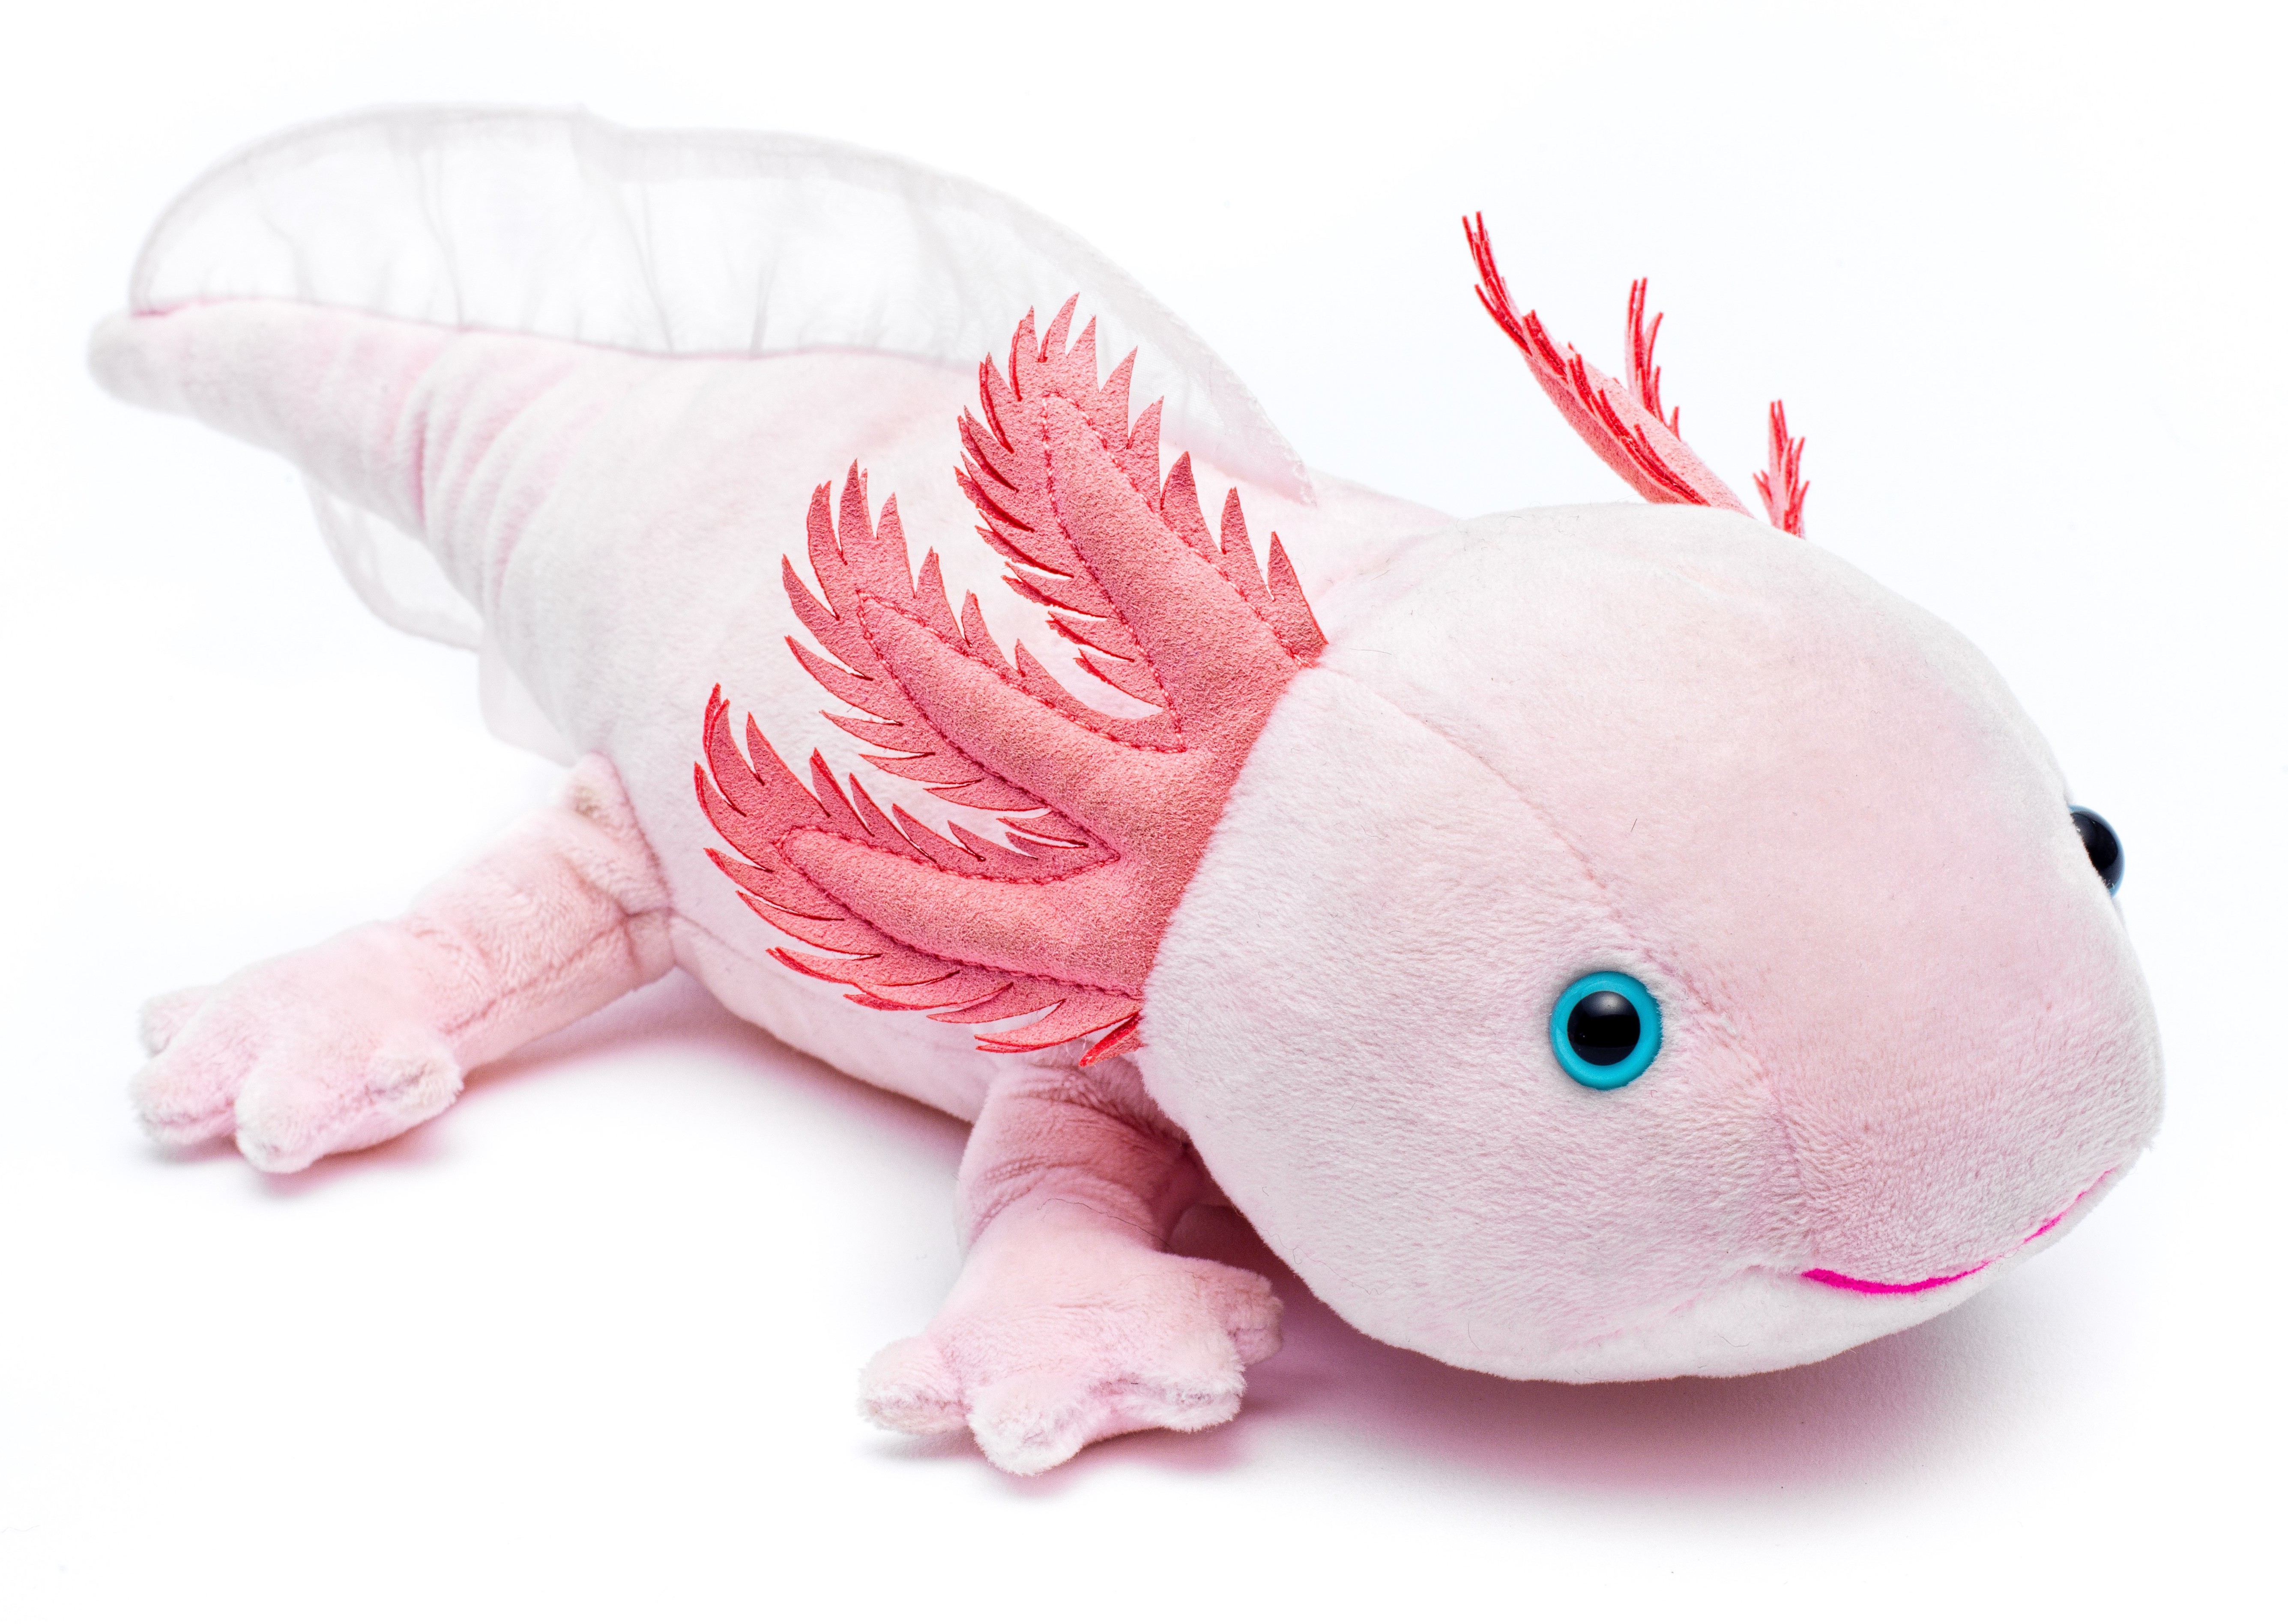 Axolotl - Alles zur erfolgreichen Zucht und Haltung - Eckmattenfilter inkl.  Luftheber, 40er Höhe, schwarz 240Liter